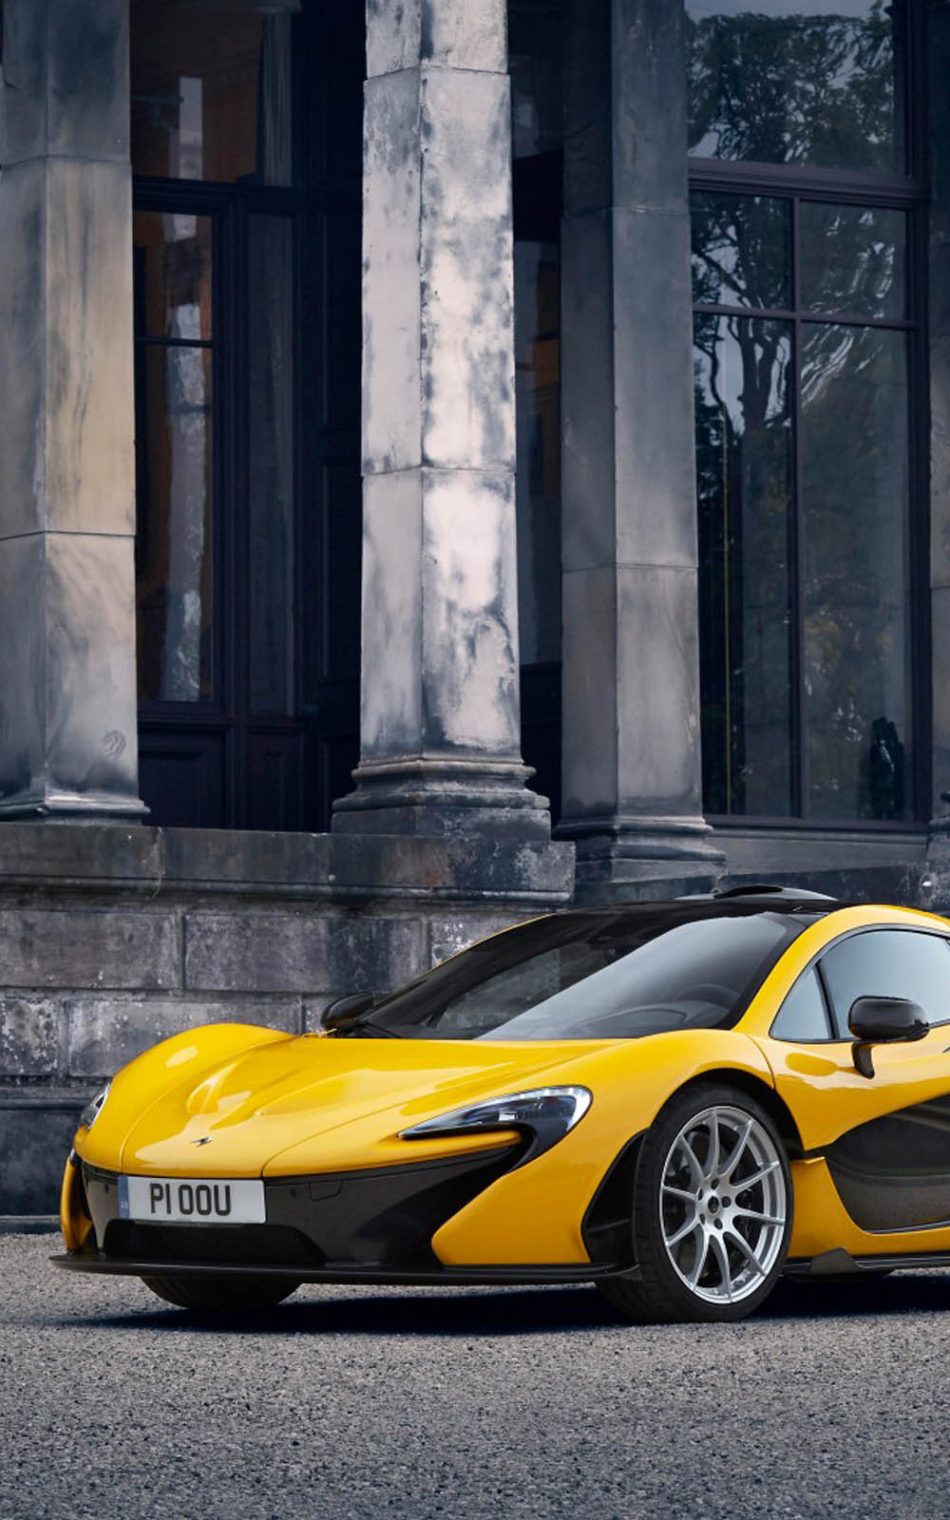 950x1520 Транспортные средства McLaren 570S McLaren автомобиль спорткар суперкар автомобиль желтый автомобиль (1080x1920) Обои для мобильного | Автомобили Maclaren Супер автомобили Обои с автомобилями 